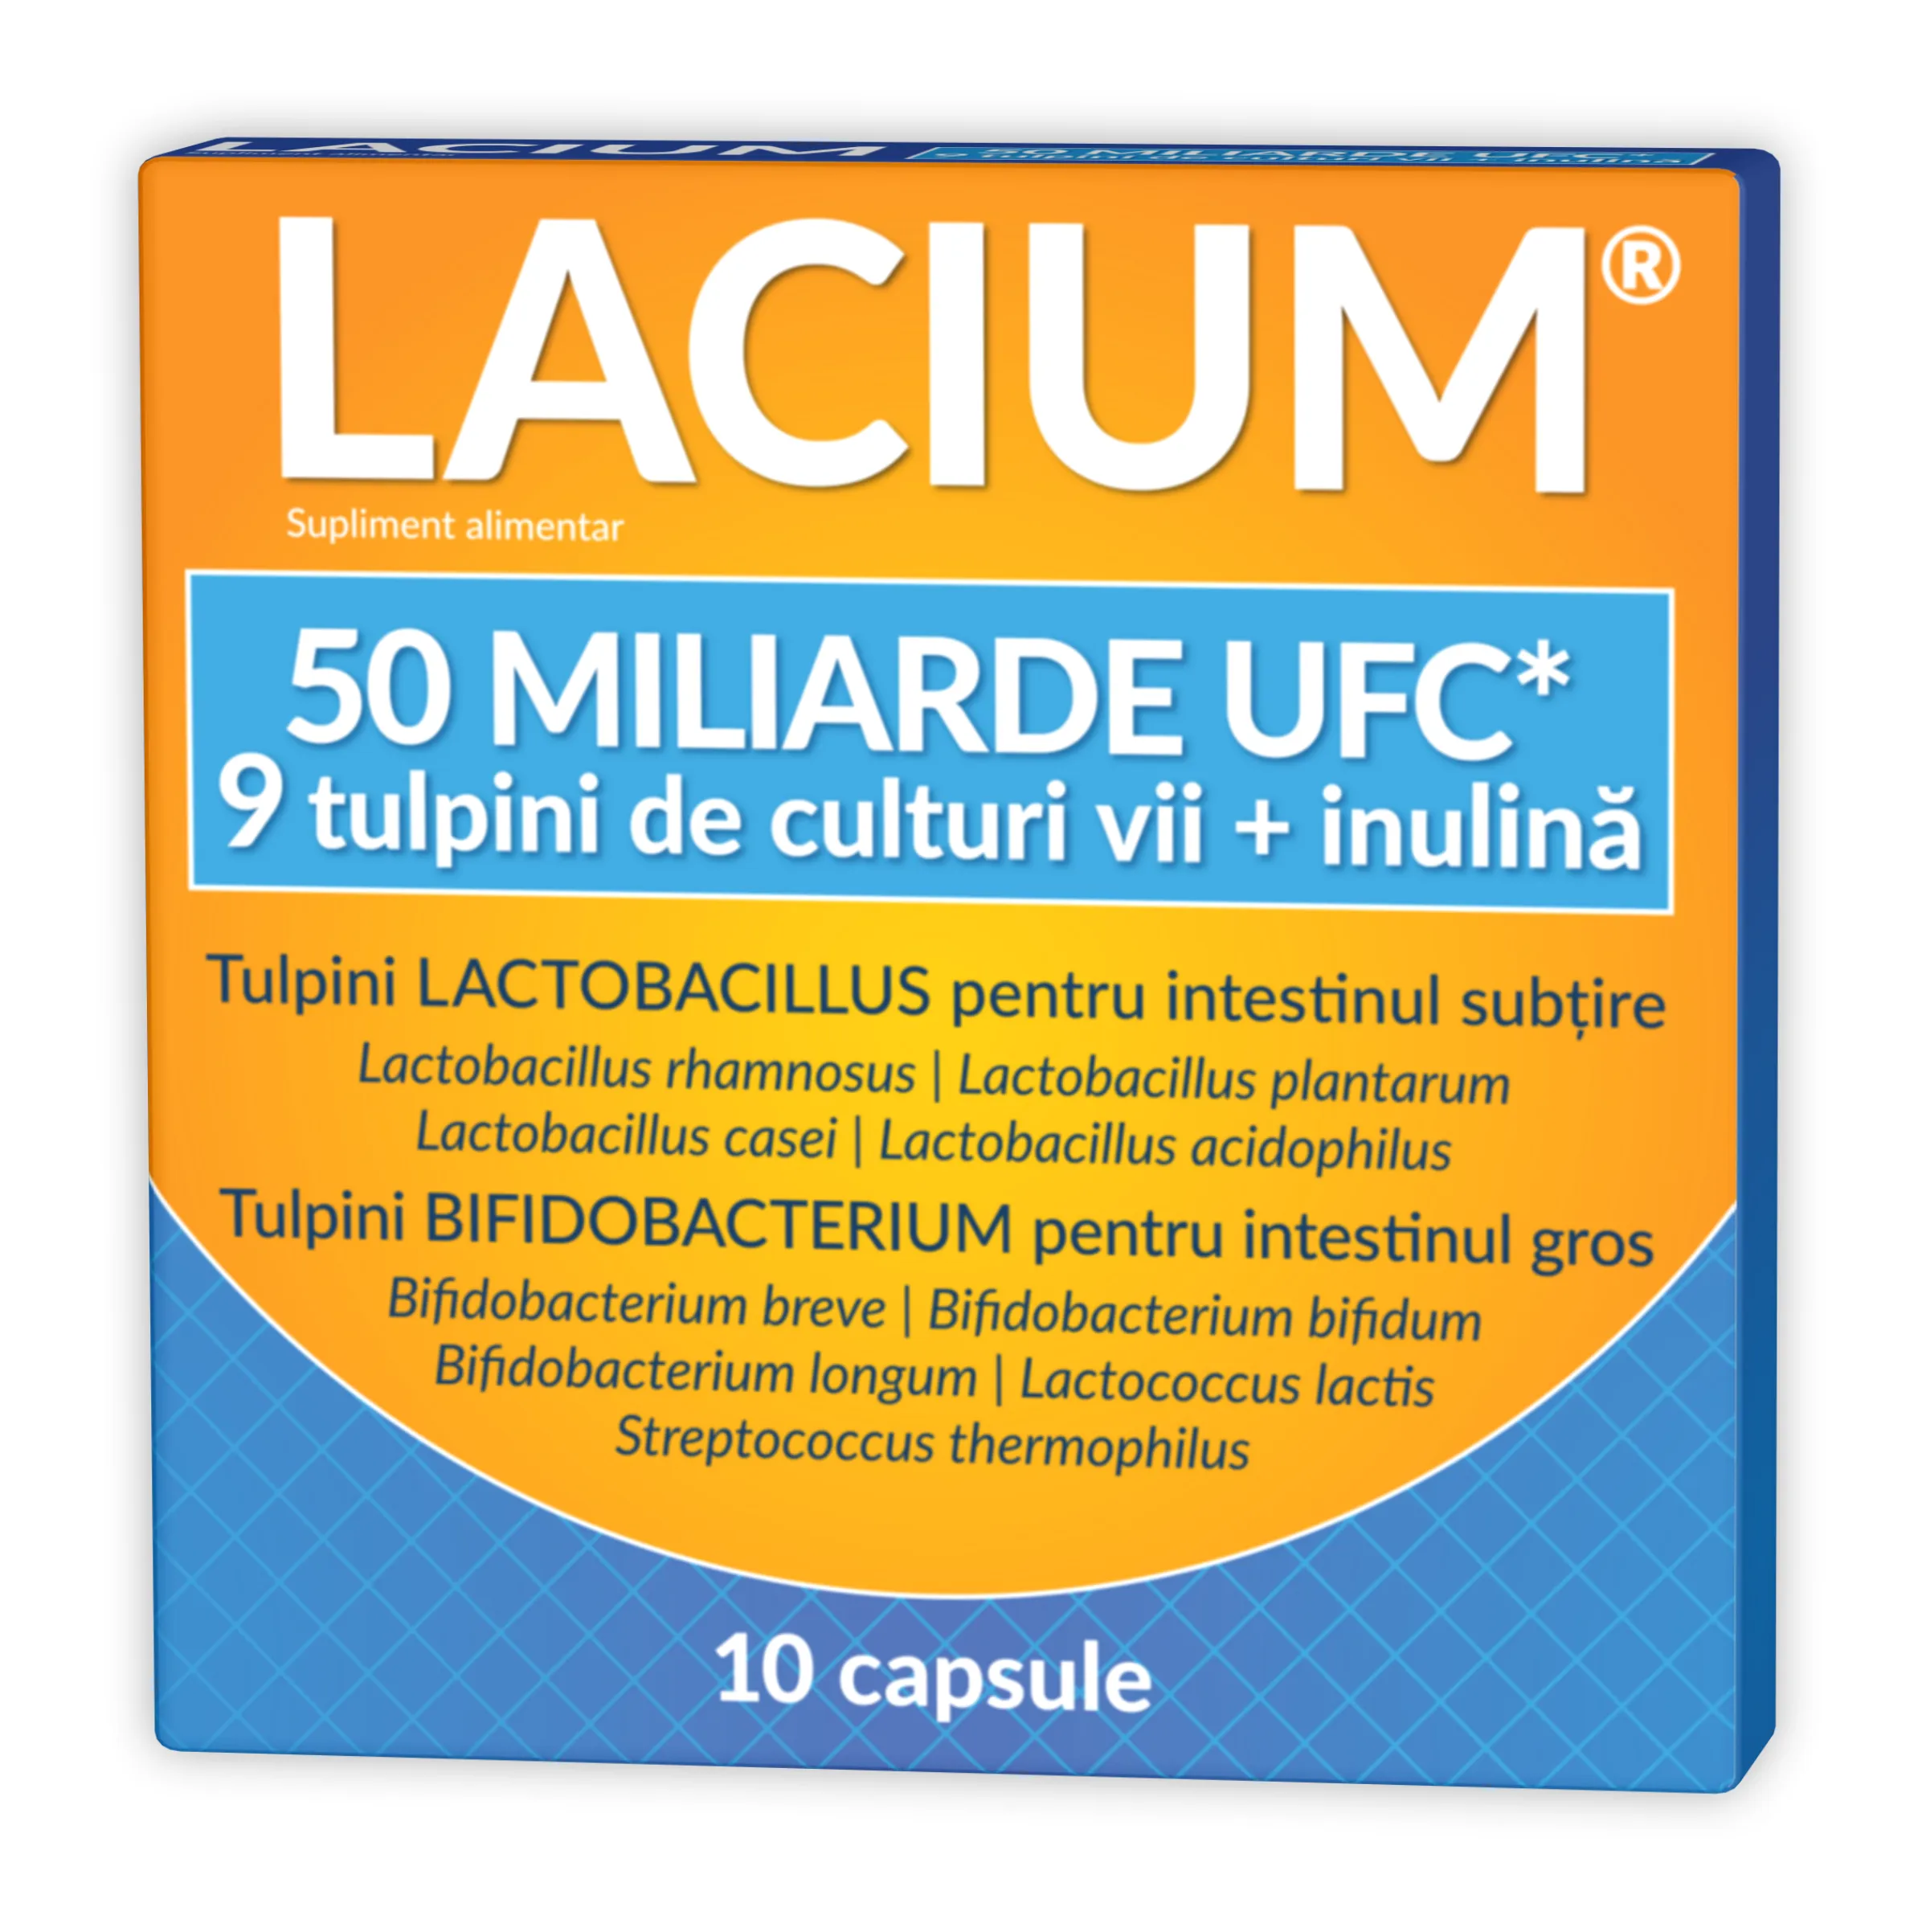 Lacium 50 miliarde UFC, 10 capsule cu eliberare prelungita, Zdrovit